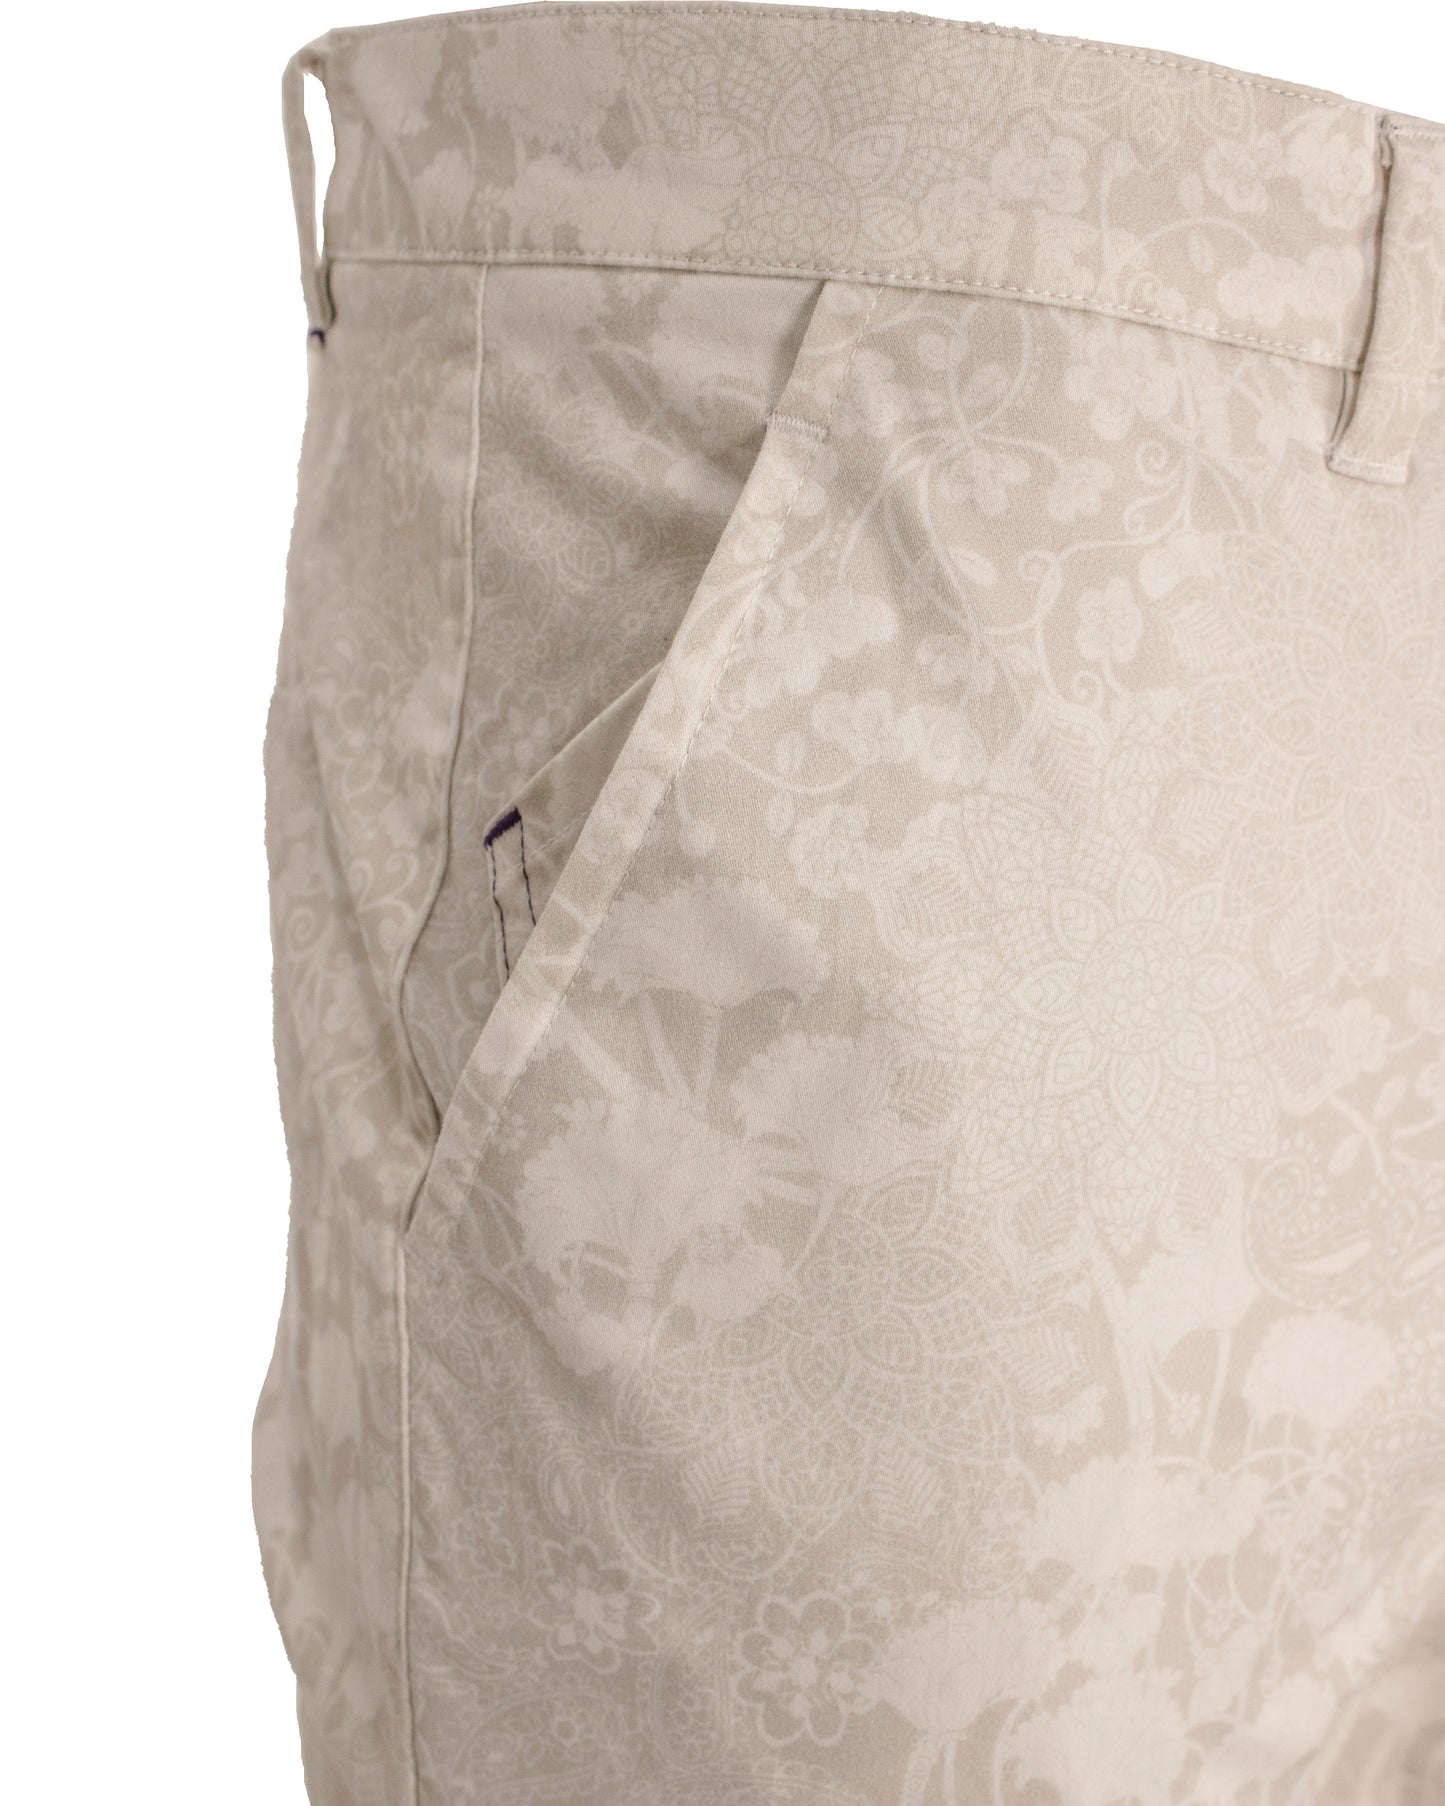 Jack Lux Paisley Floral Pumice Pants